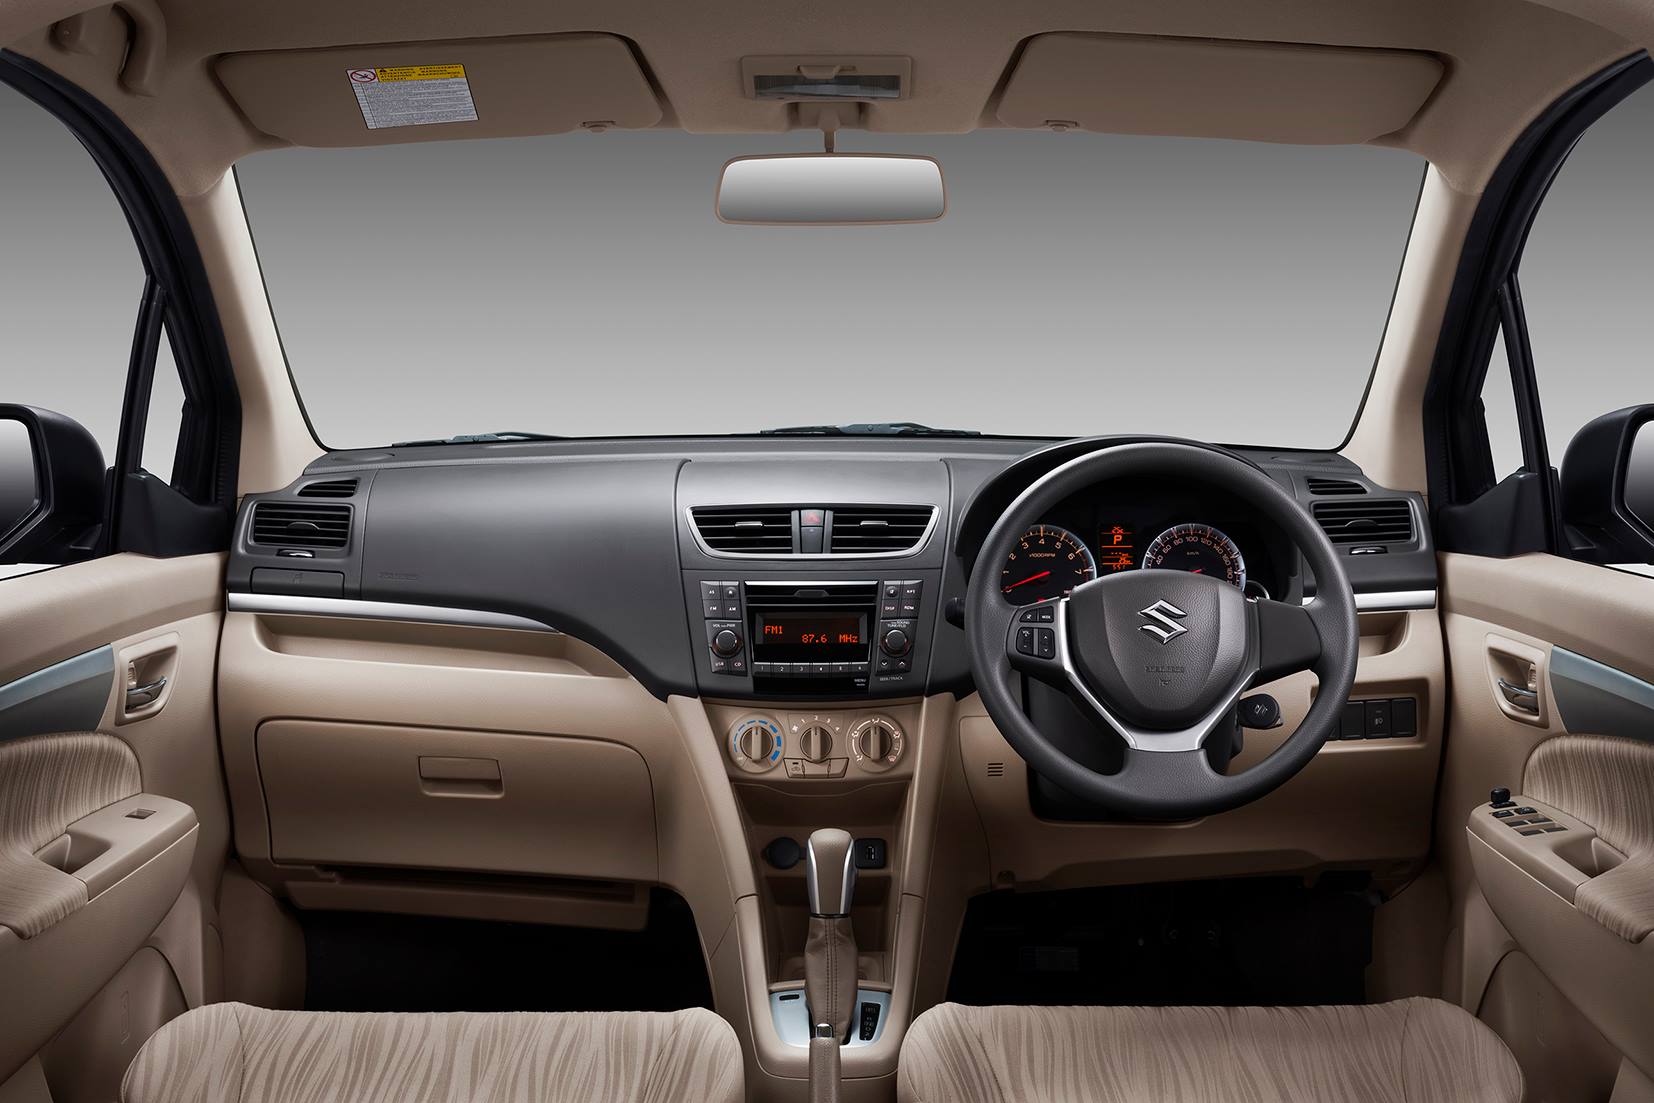 Suzuki Ertiga 2020 Interior Reviews Pictures